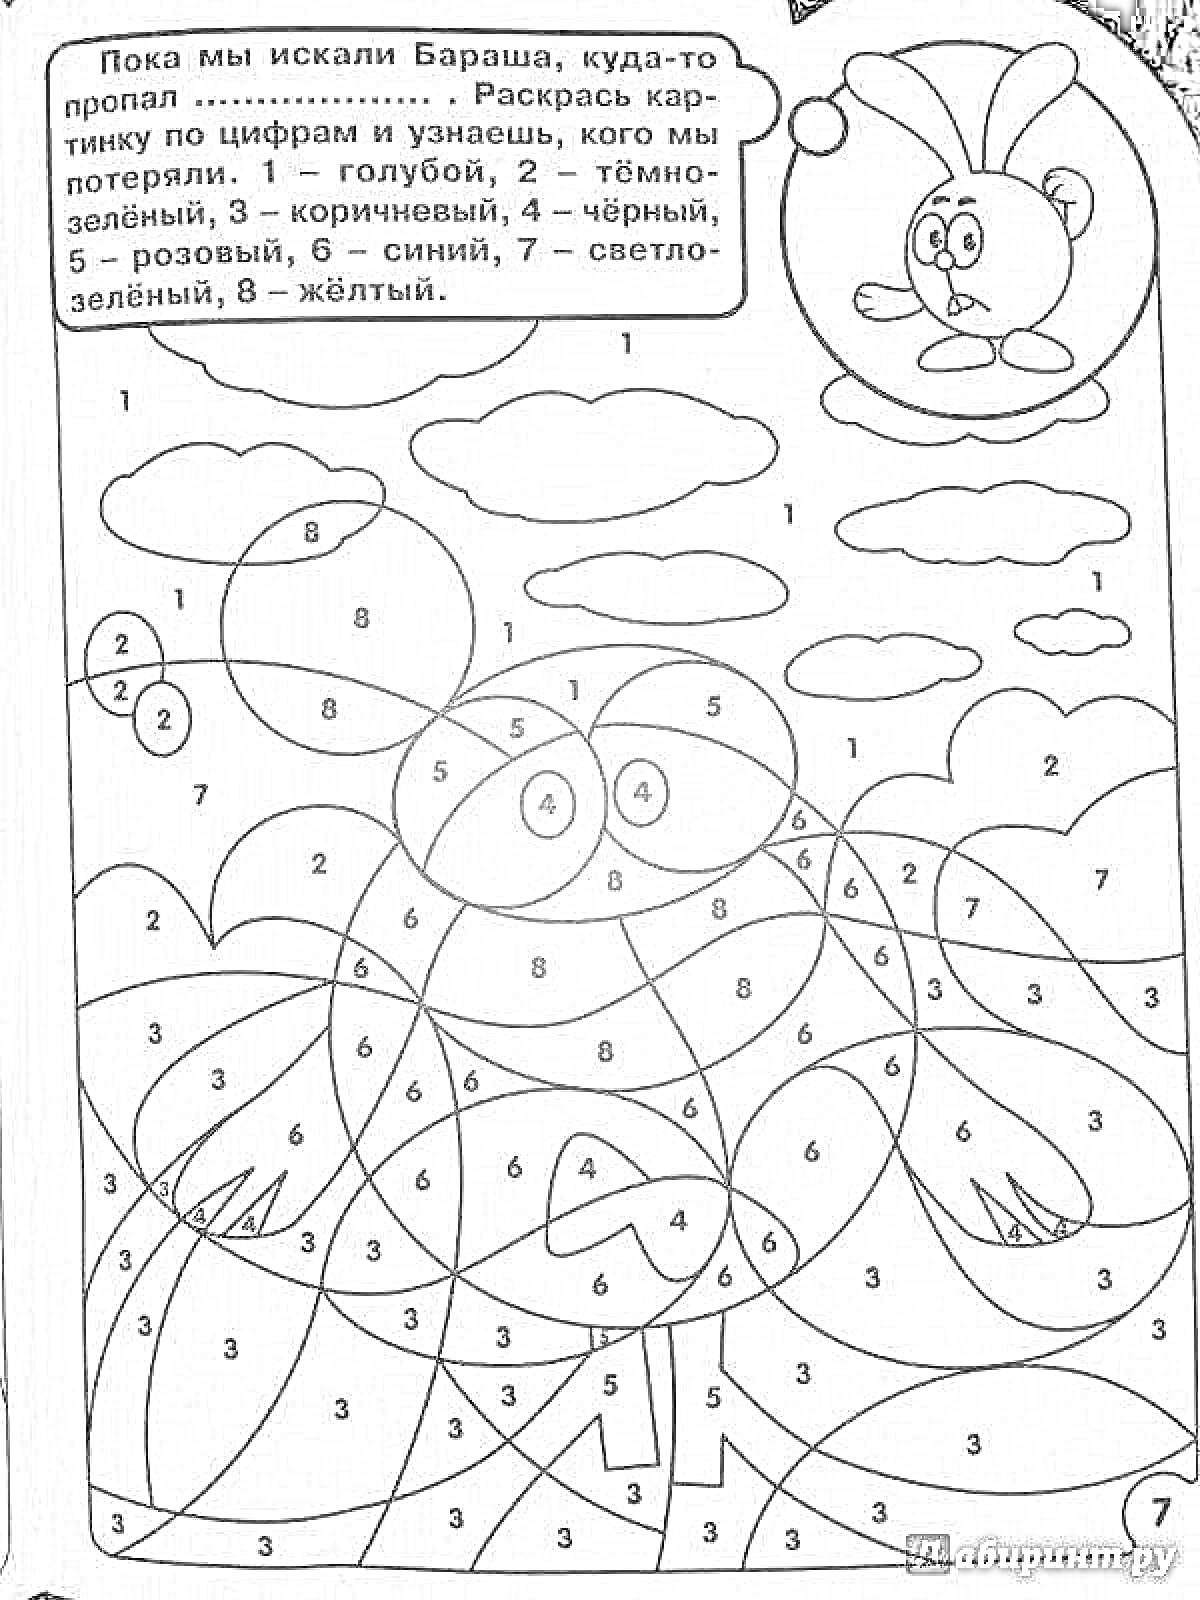 Раскраска Раскраска по номерам: потерянный Смешарик с шариком, облаками и солнышком на заднем плане